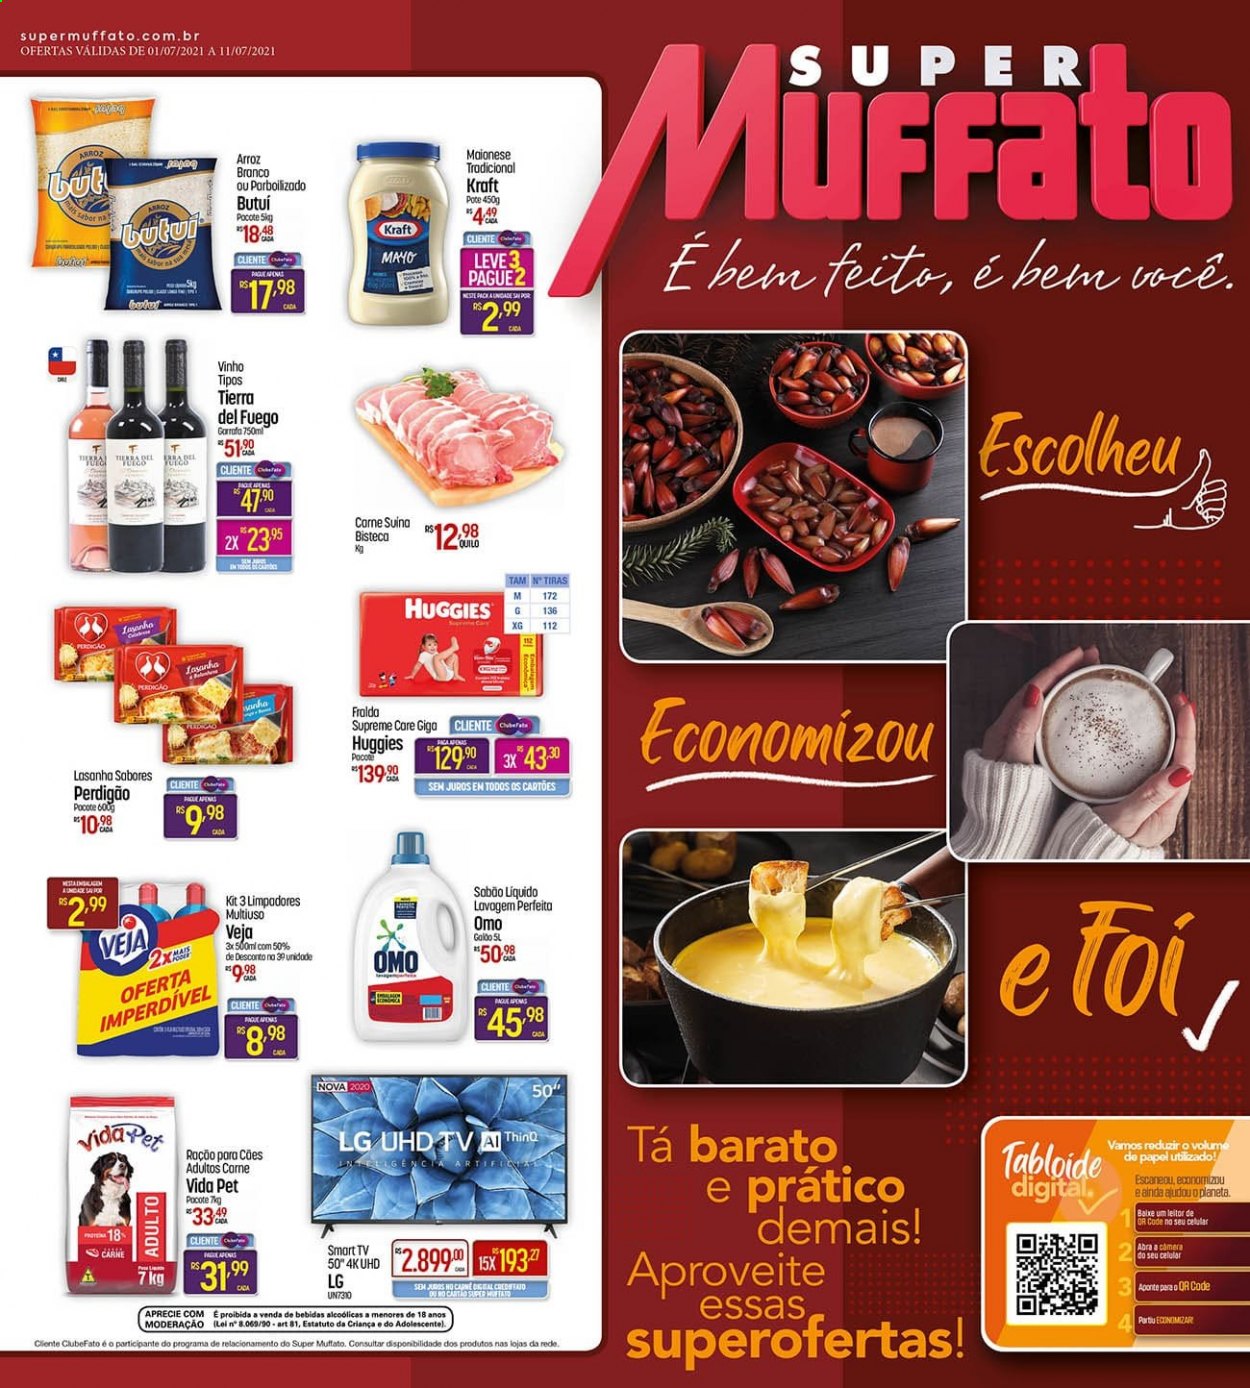 thumbnail - Folheto Super Muffato - 01/07/2021 - 11/07/2021 - Produtos em promoção - LG, carne suína, Perdigão, lasanha, maionese, arroz branco, vinho, Huggies, fraldas, alimentos para cães, ração. Página 1.